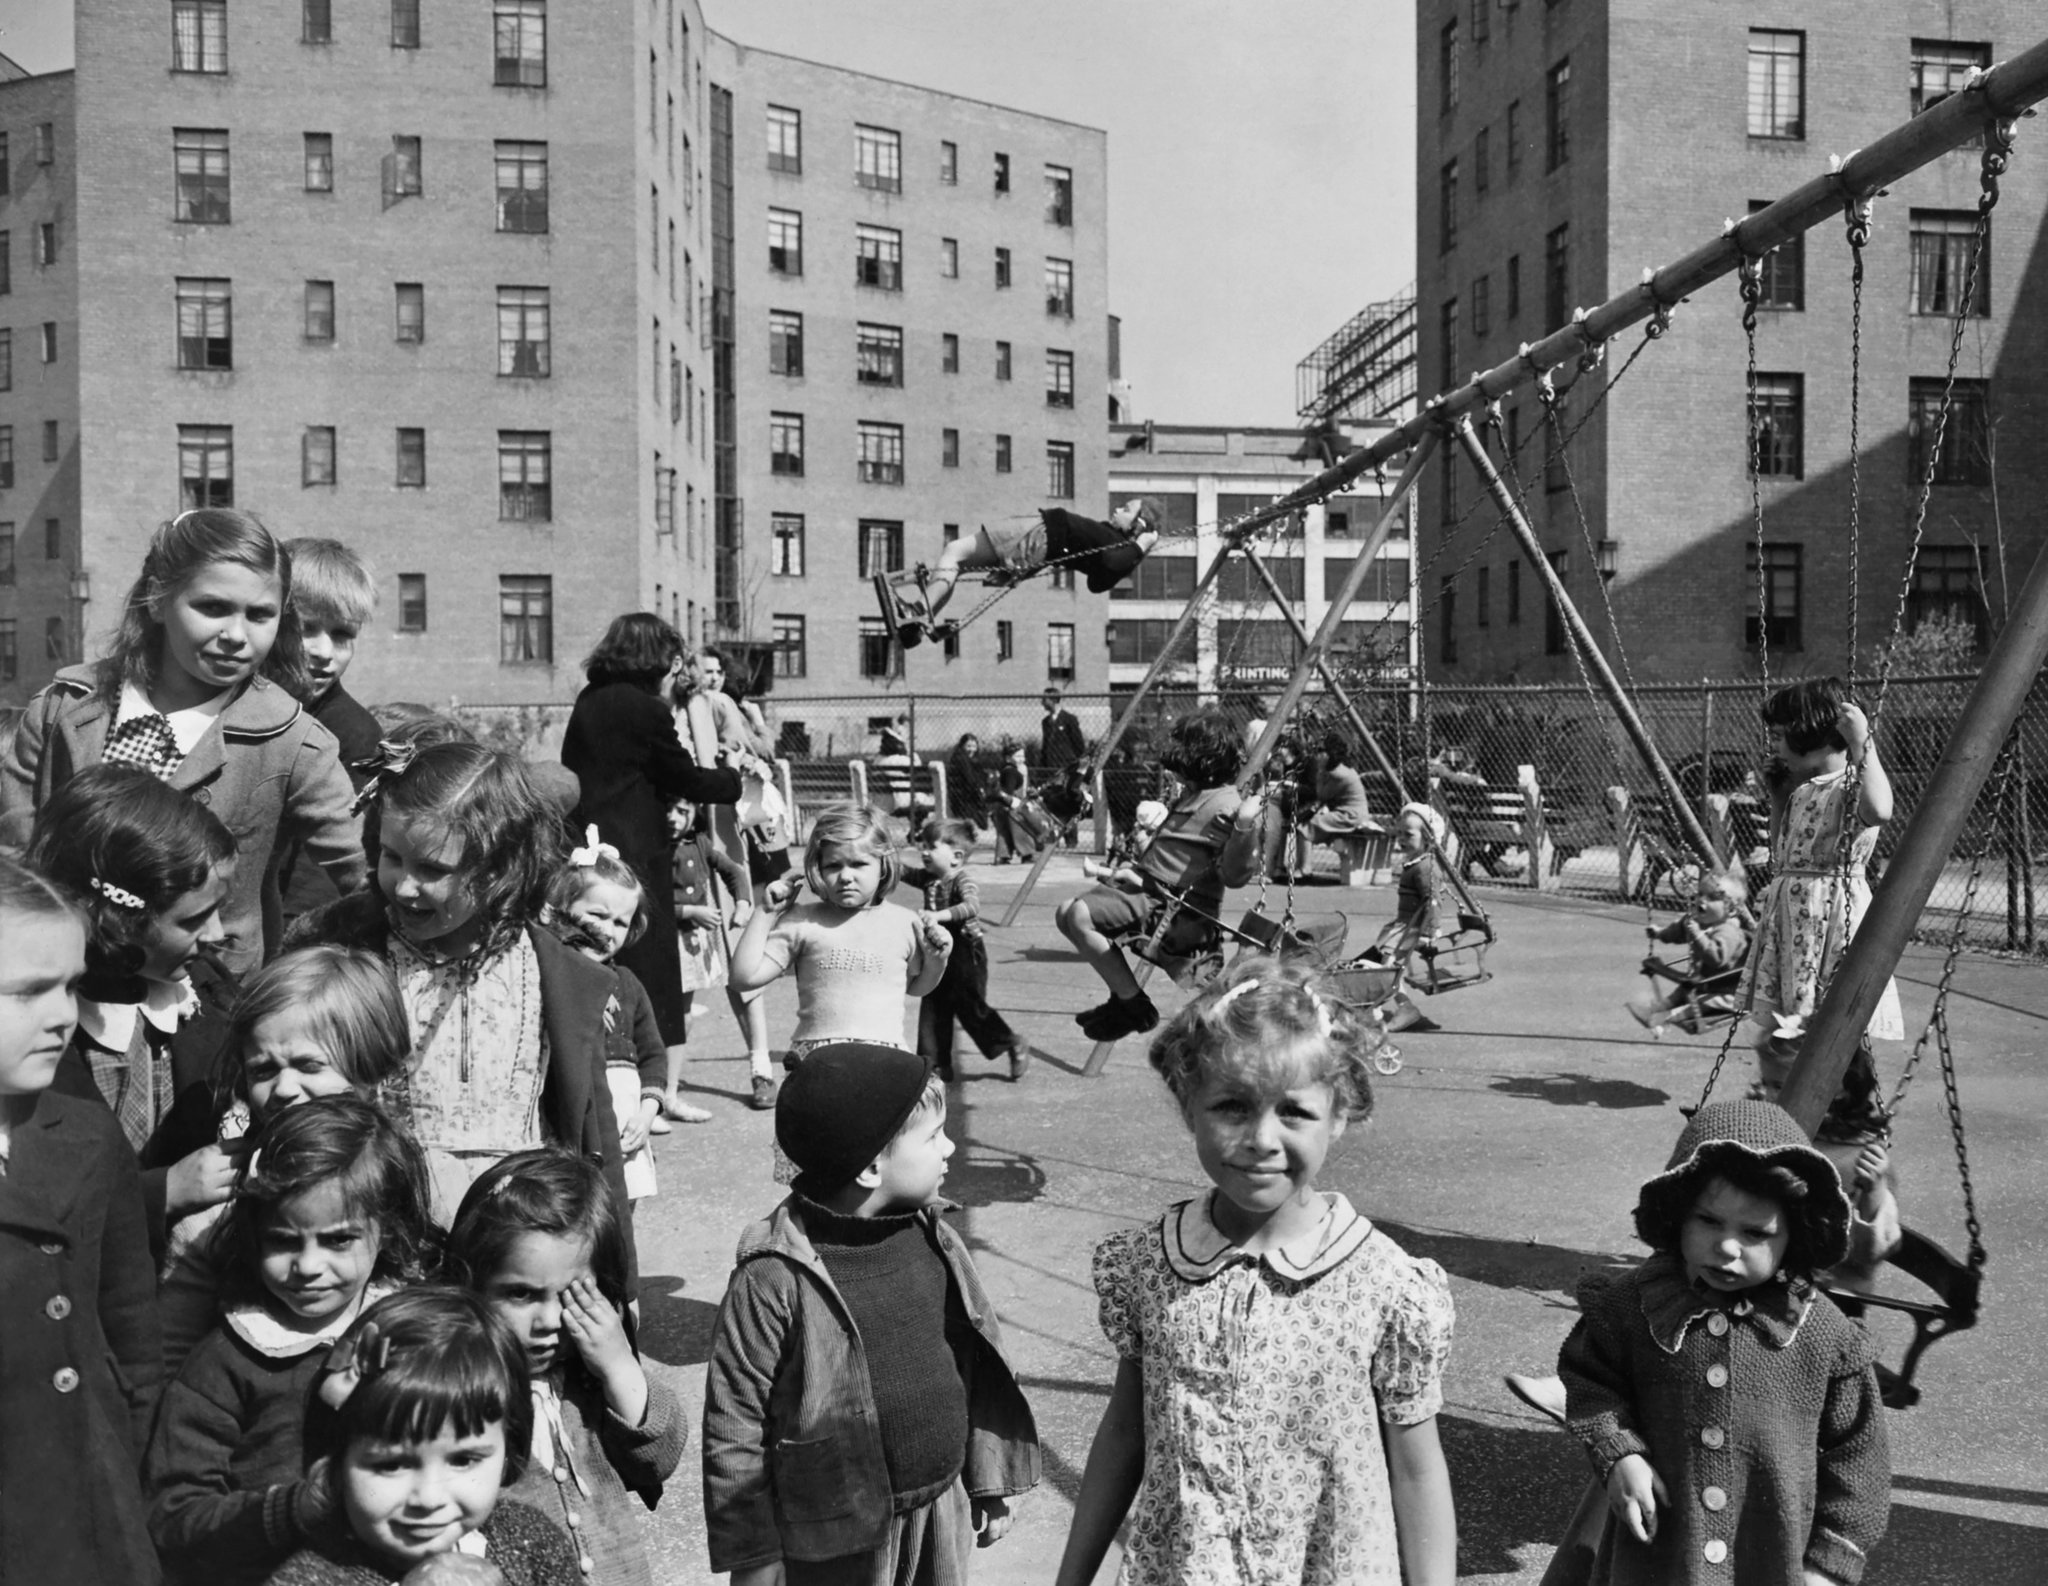 Playground, 1940’s